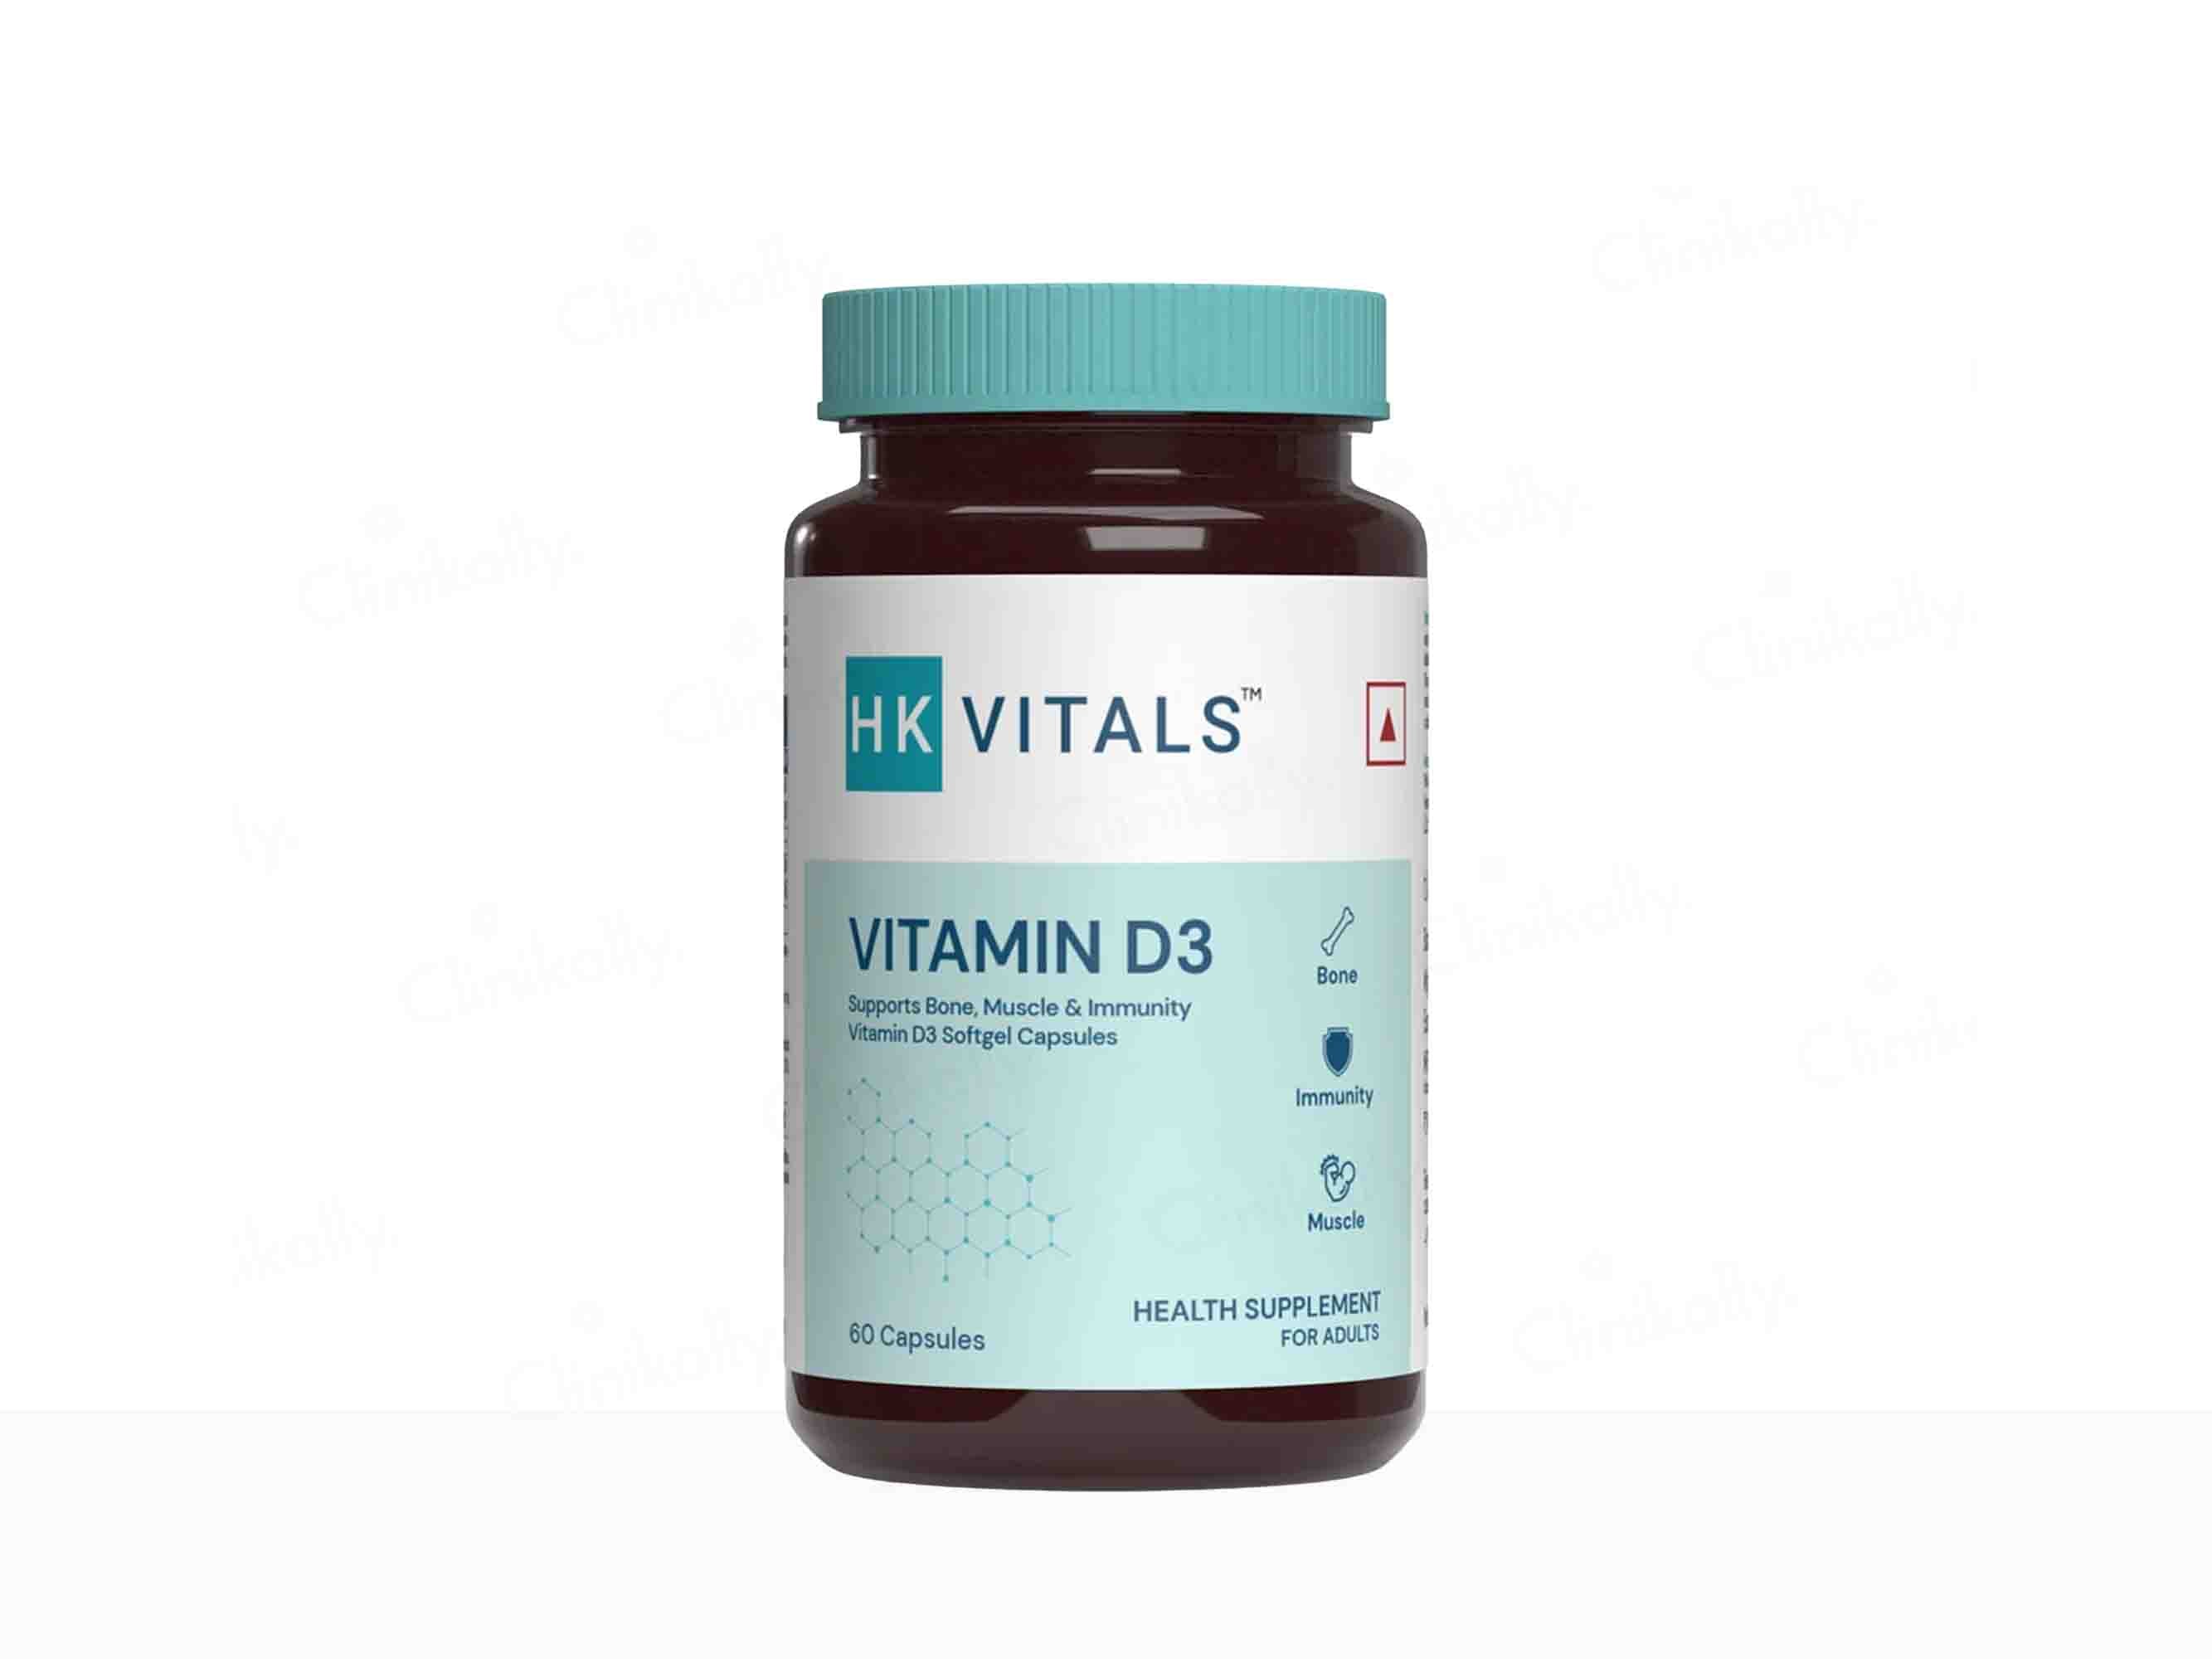 HK Vitals Vitamin D3 Soft Gelatin Capsule